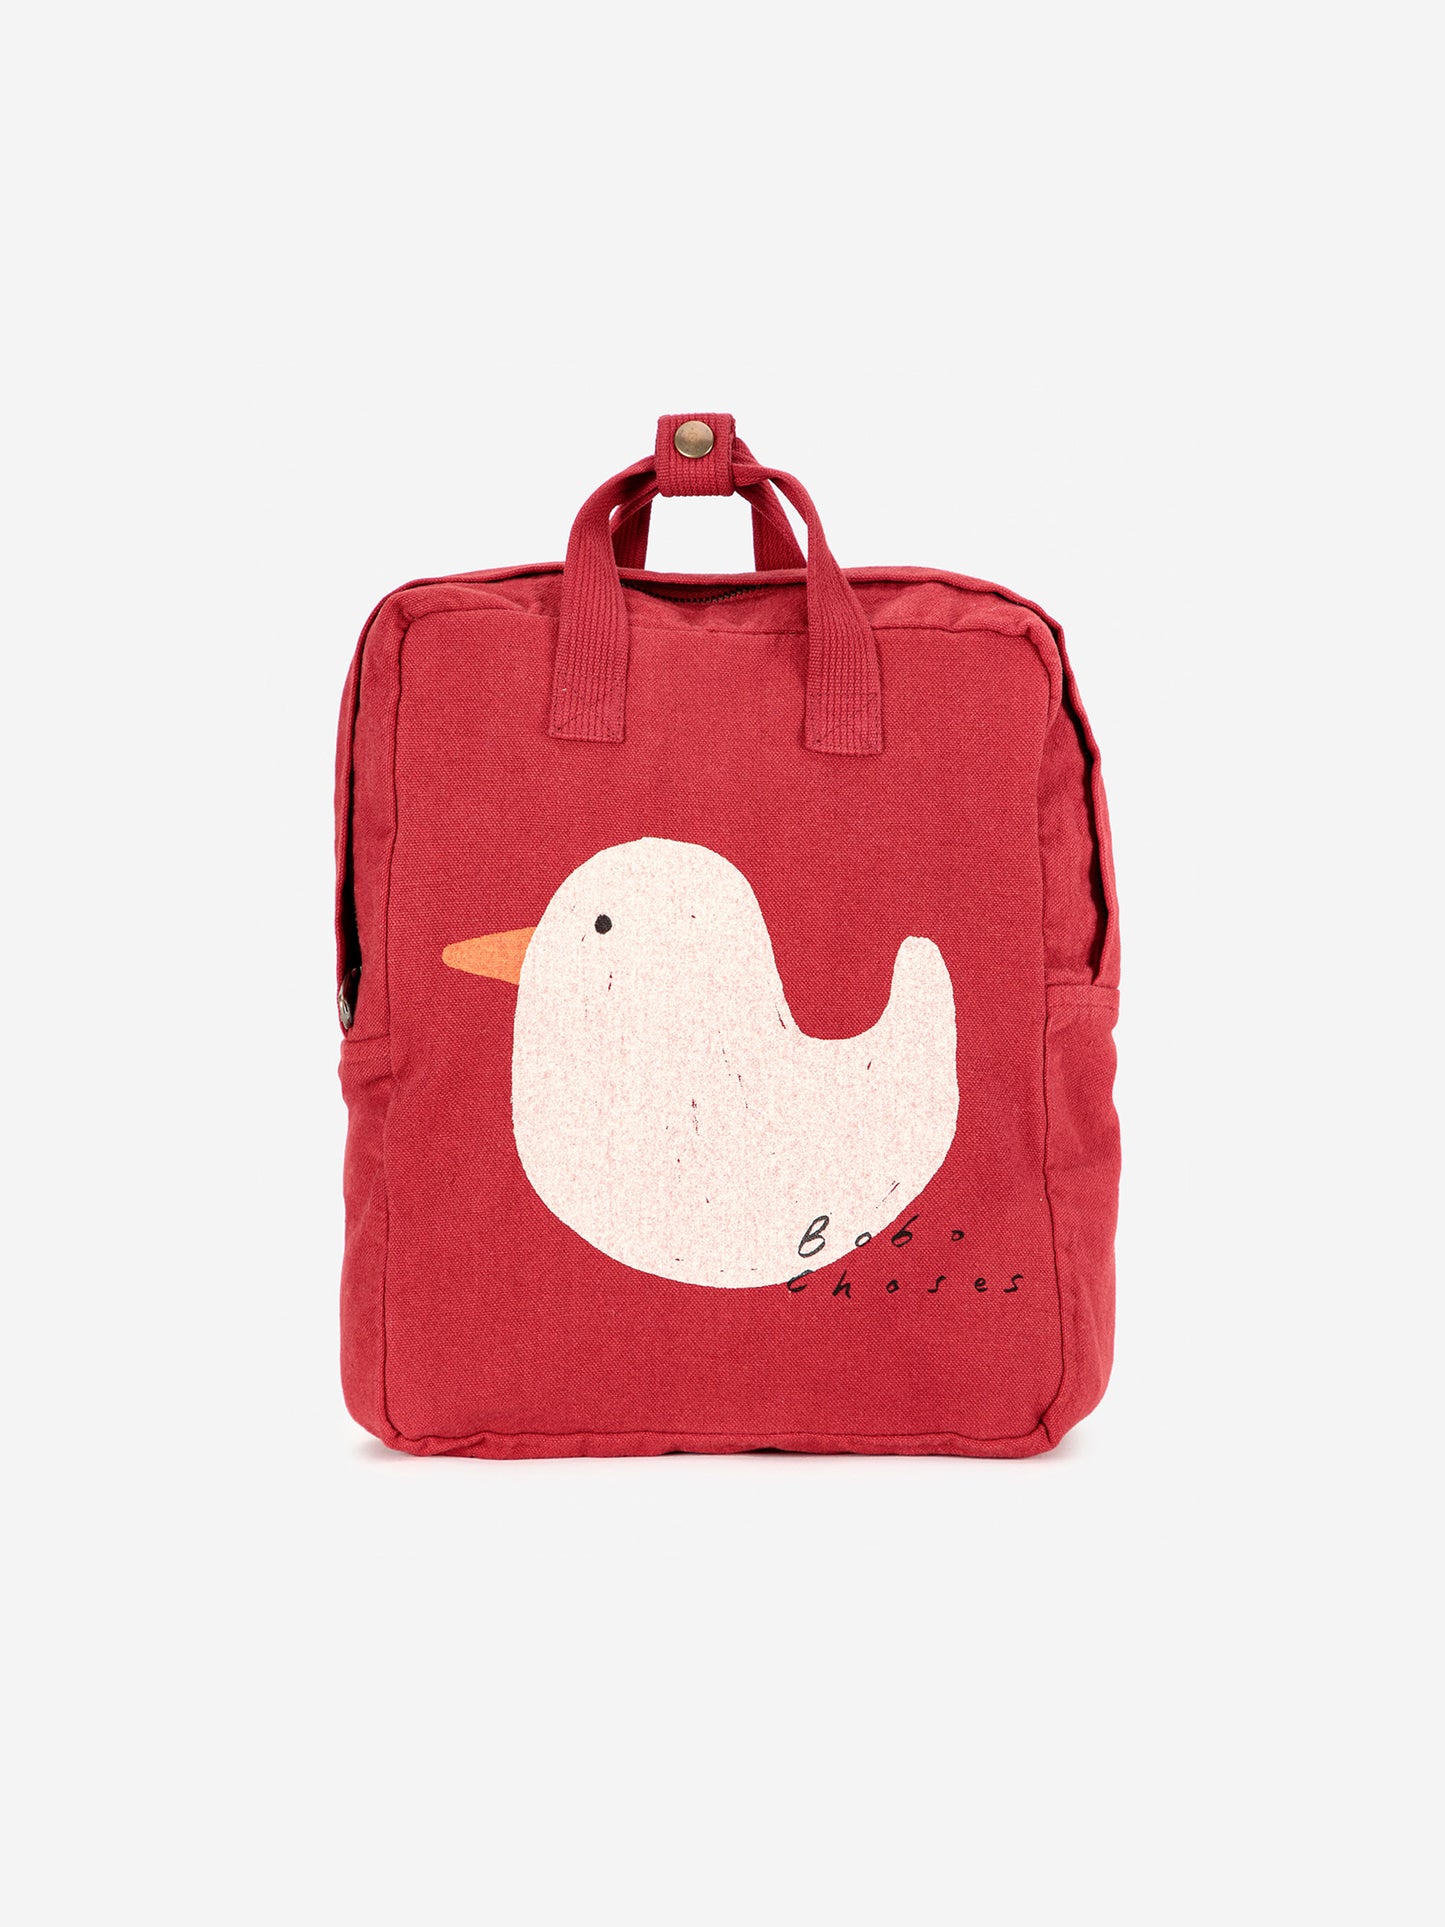 Rubber Duck schoolbag